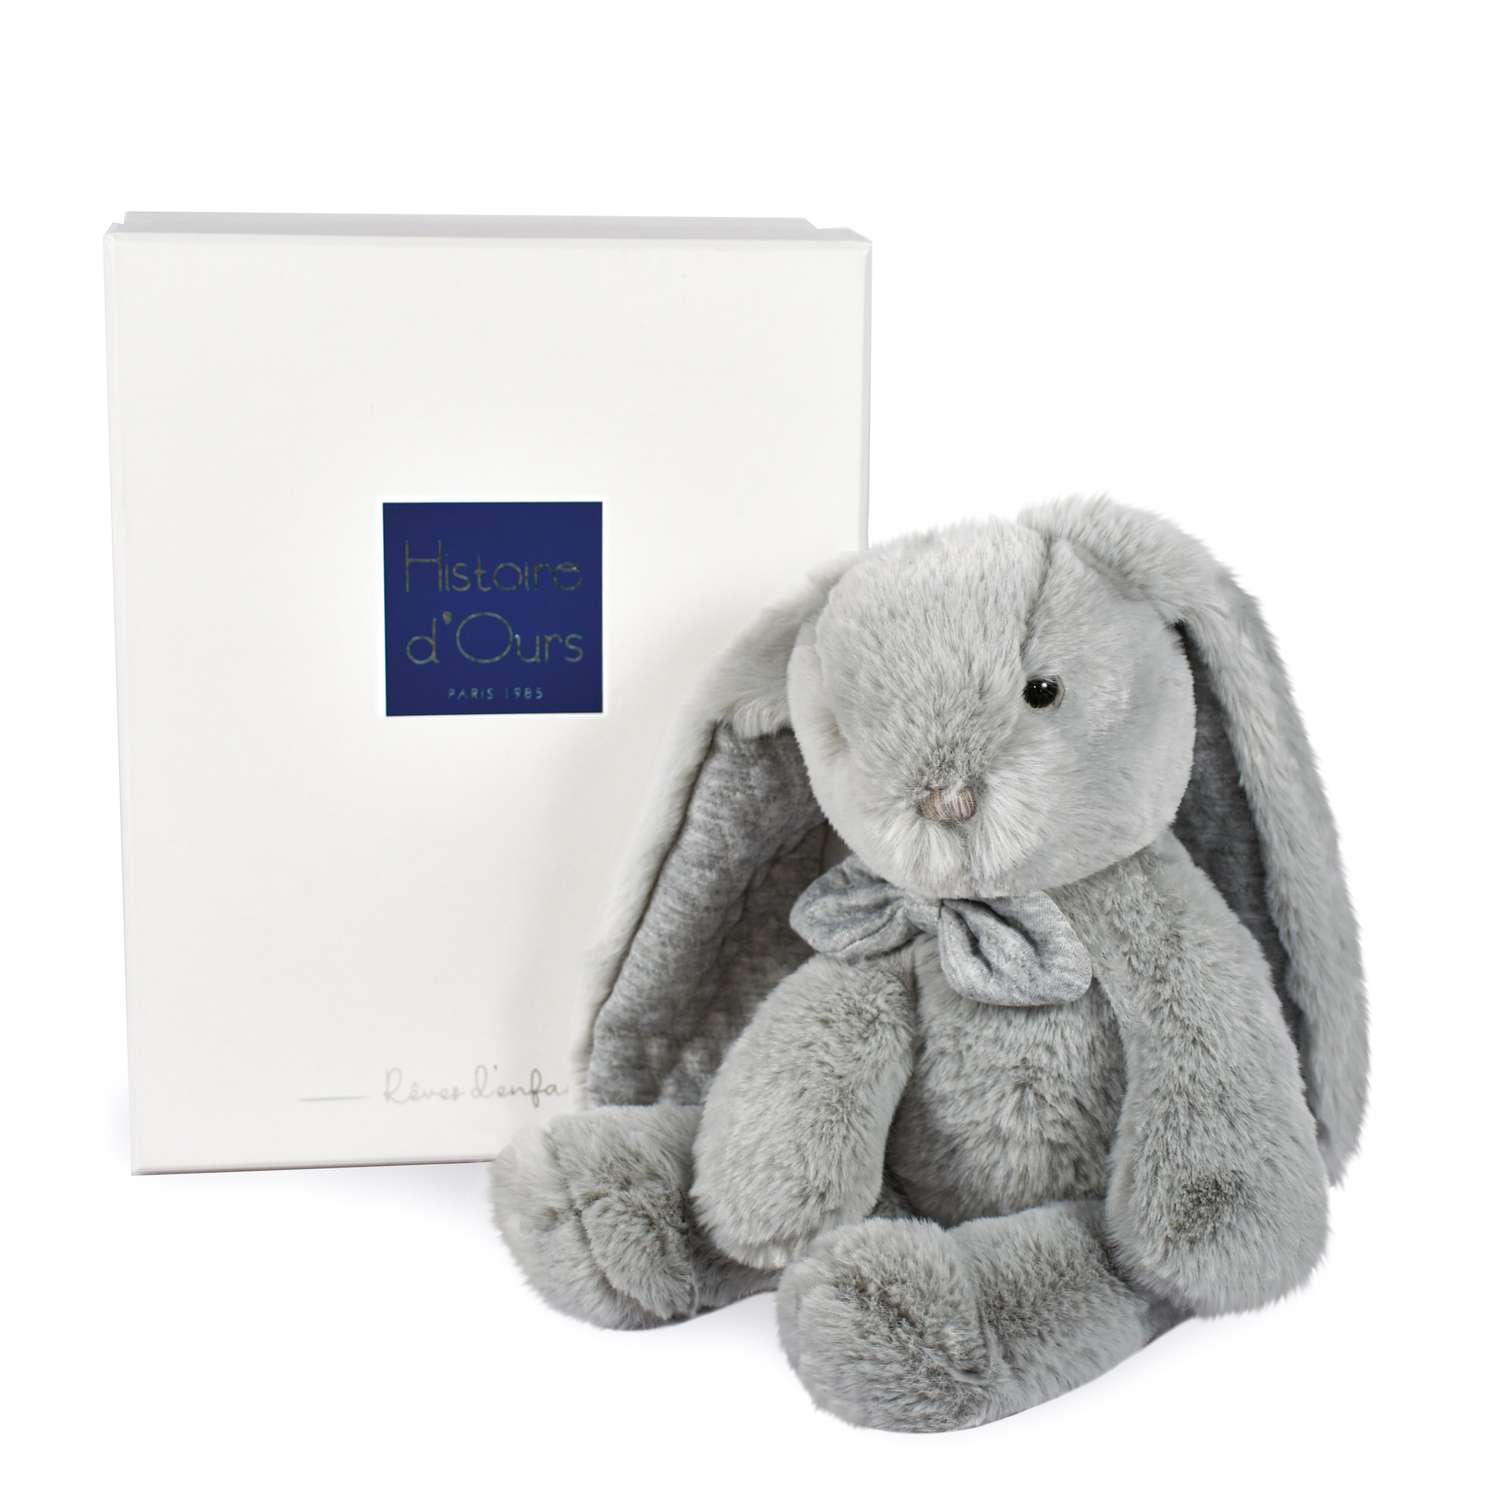 Игрушка Histoire dOurs               PREPPY CHIC серый кролик 30 см - фото 2